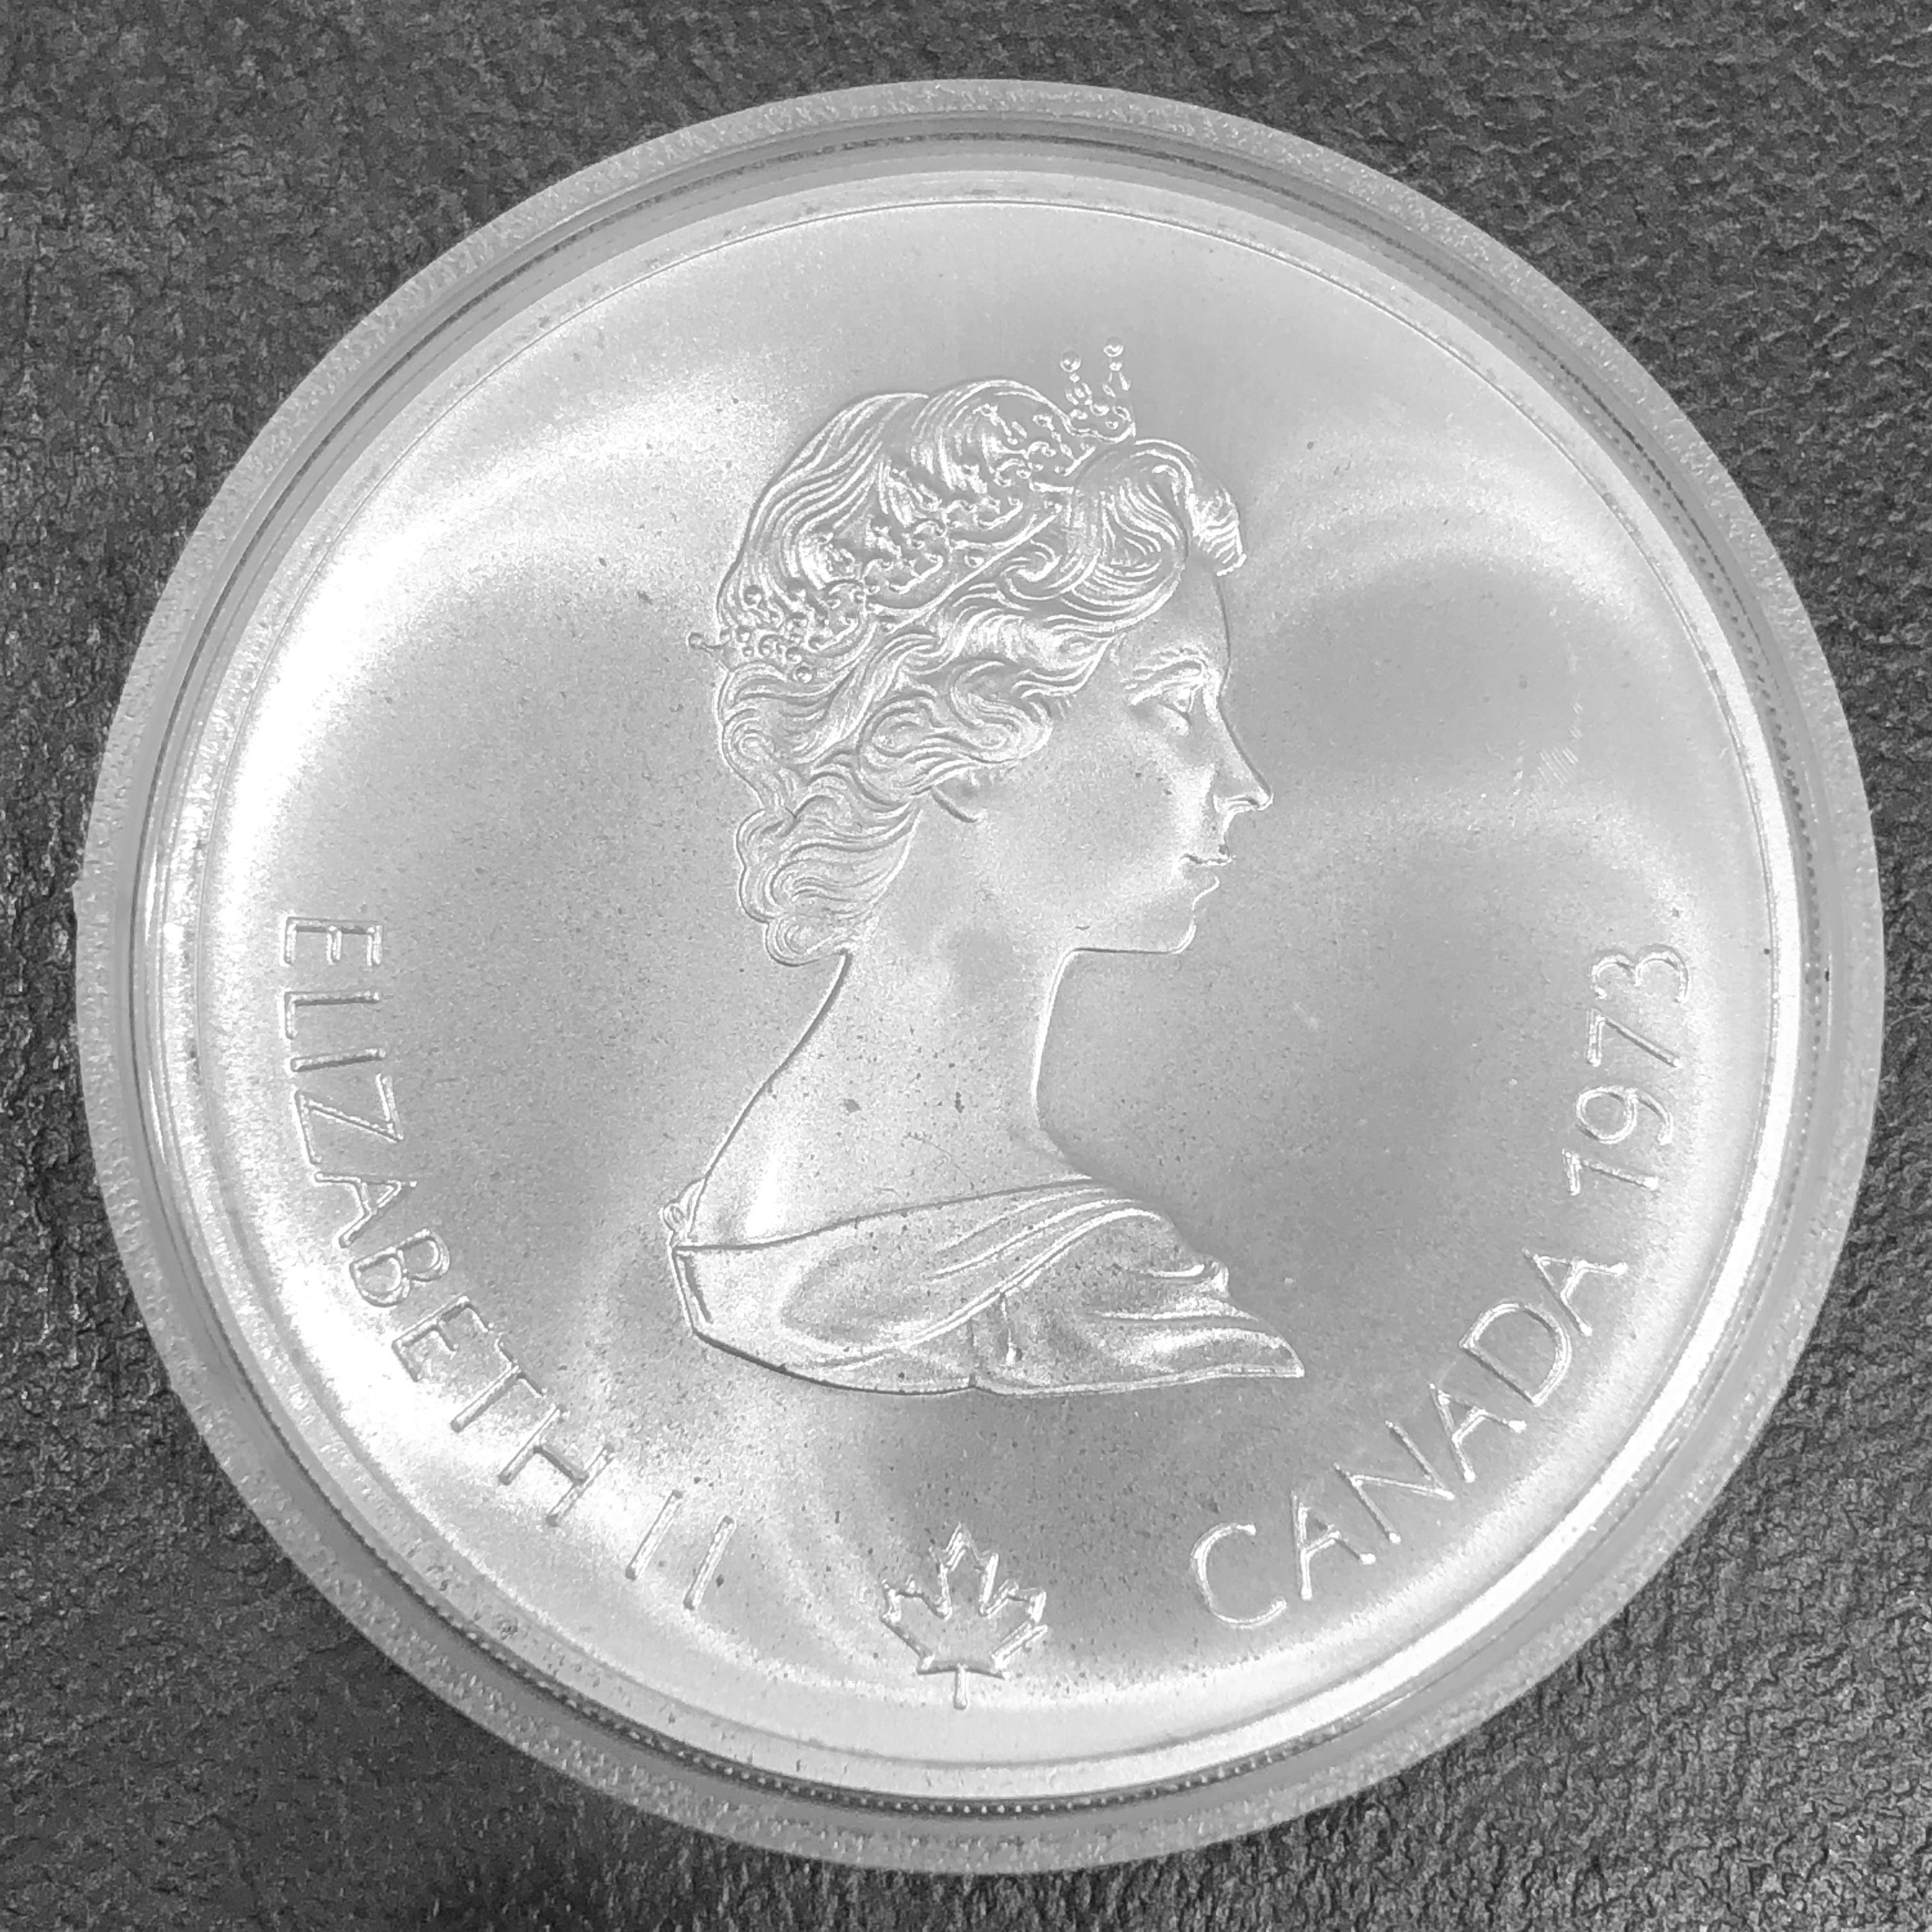 1976年モントリオールオリンピック 10ガラー 記念銀貨